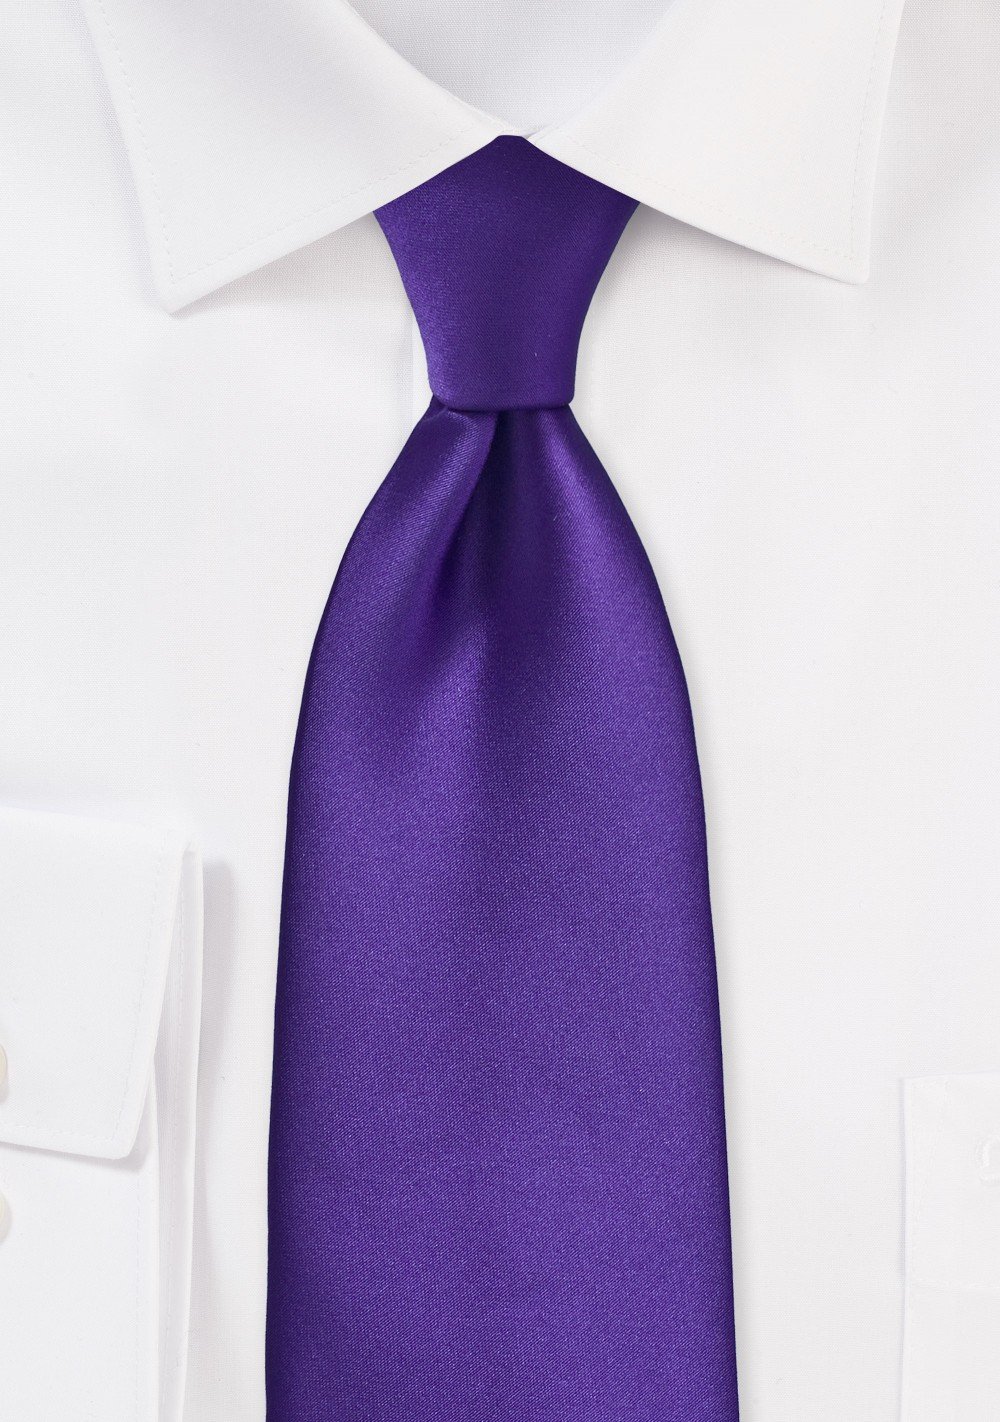 Regency Purple Tie